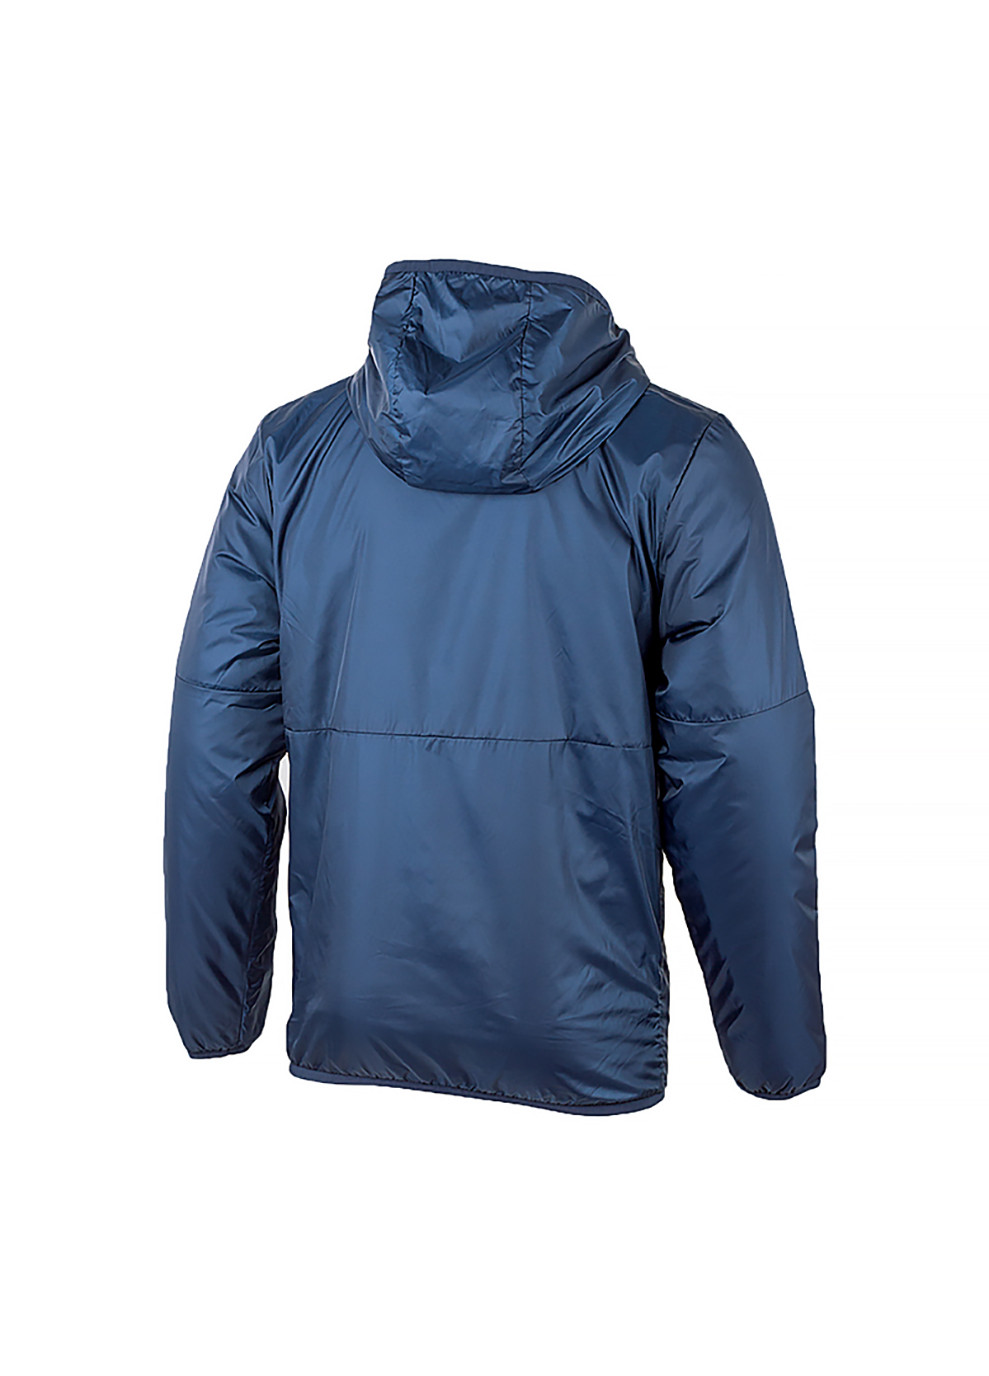 Синяя демисезонная мужская куртка m nk thrm rpl park20 fall jkt синий s (cw6157-451 s) Nike